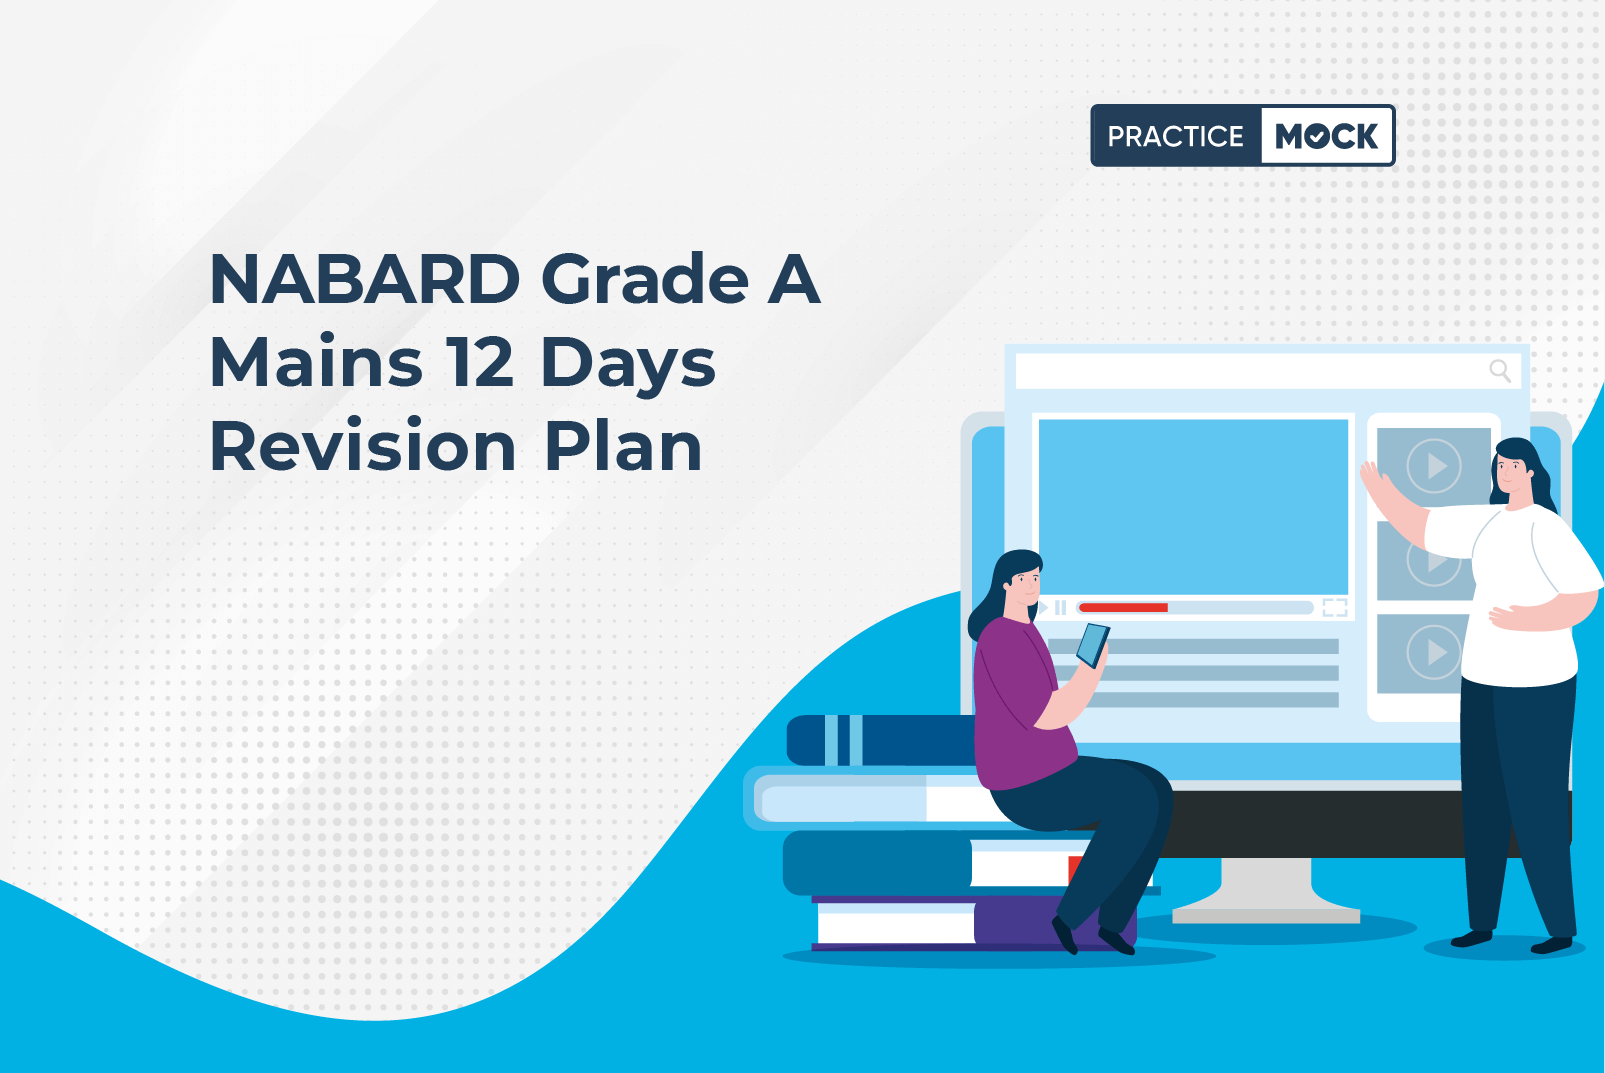 NABARD Grade A Mains 12 Days Revision Plan